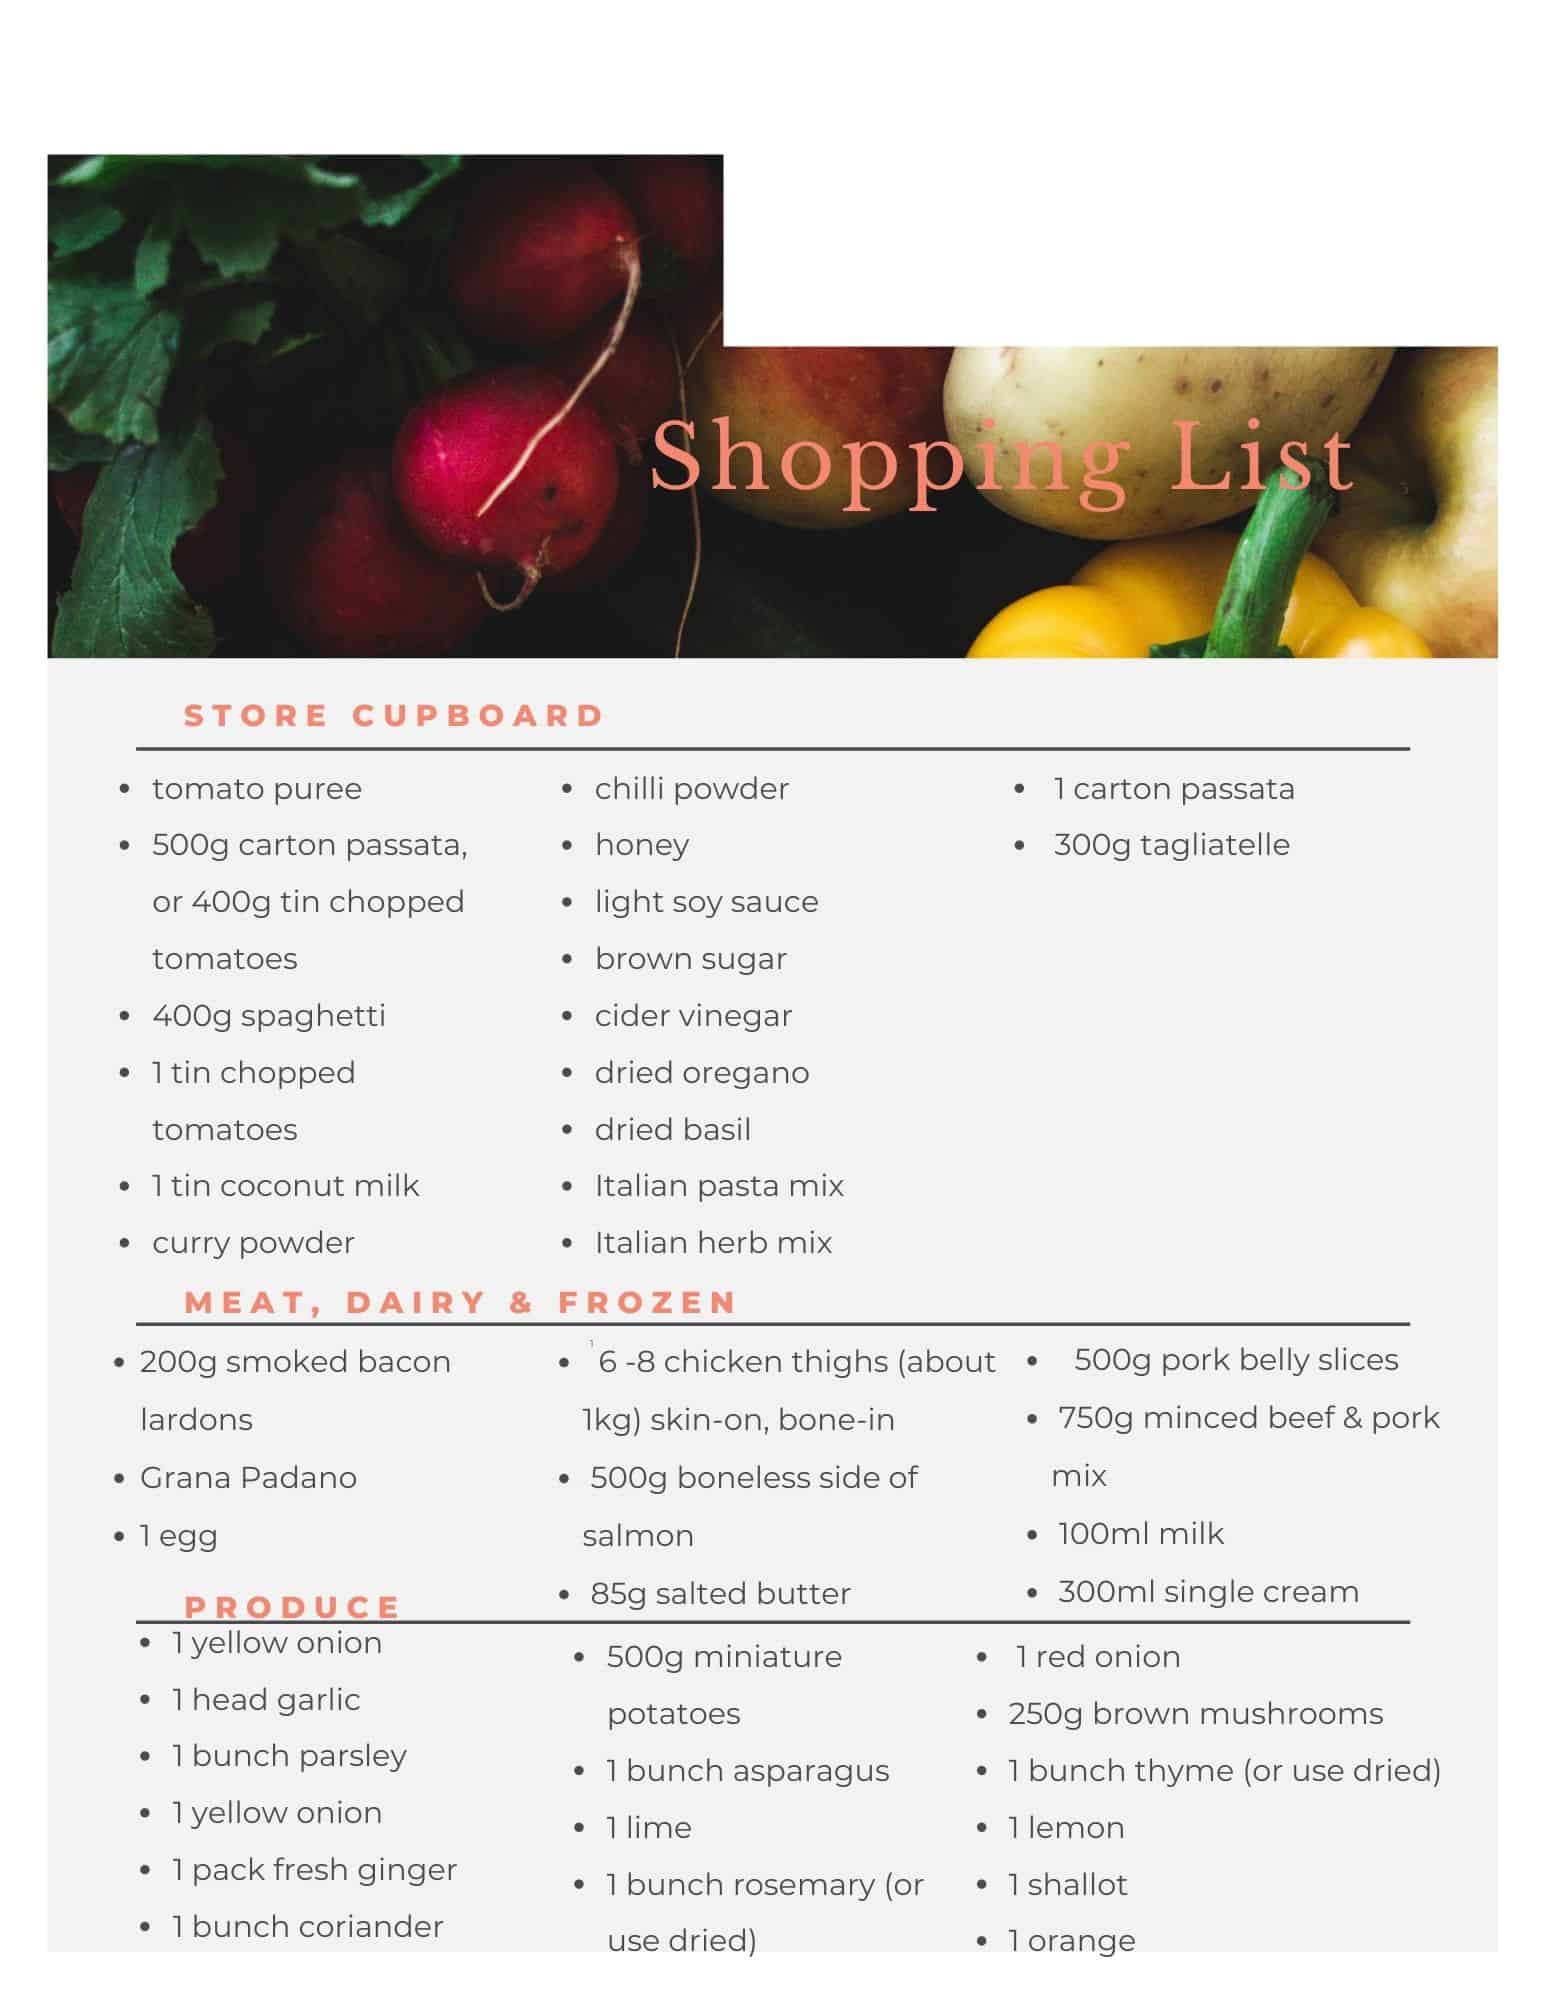 Aldi flexible meal plan shopping list. Free printout.